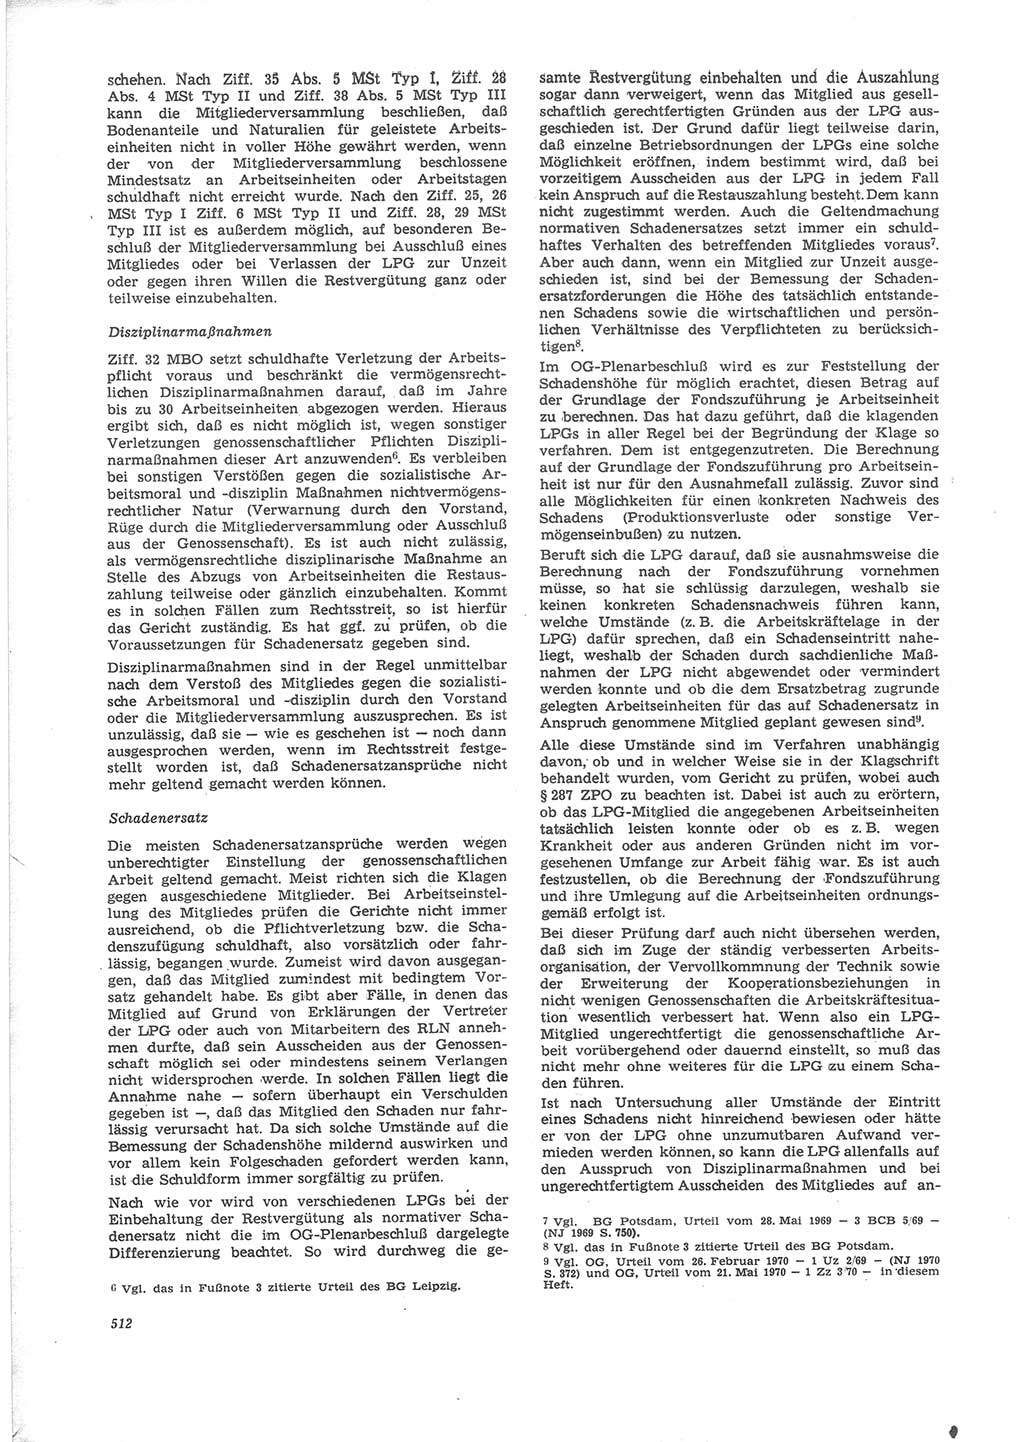 Neue Justiz (NJ), Zeitschrift für Recht und Rechtswissenschaft [Deutsche Demokratische Republik (DDR)], 24. Jahrgang 1970, Seite 512 (NJ DDR 1970, S. 512)